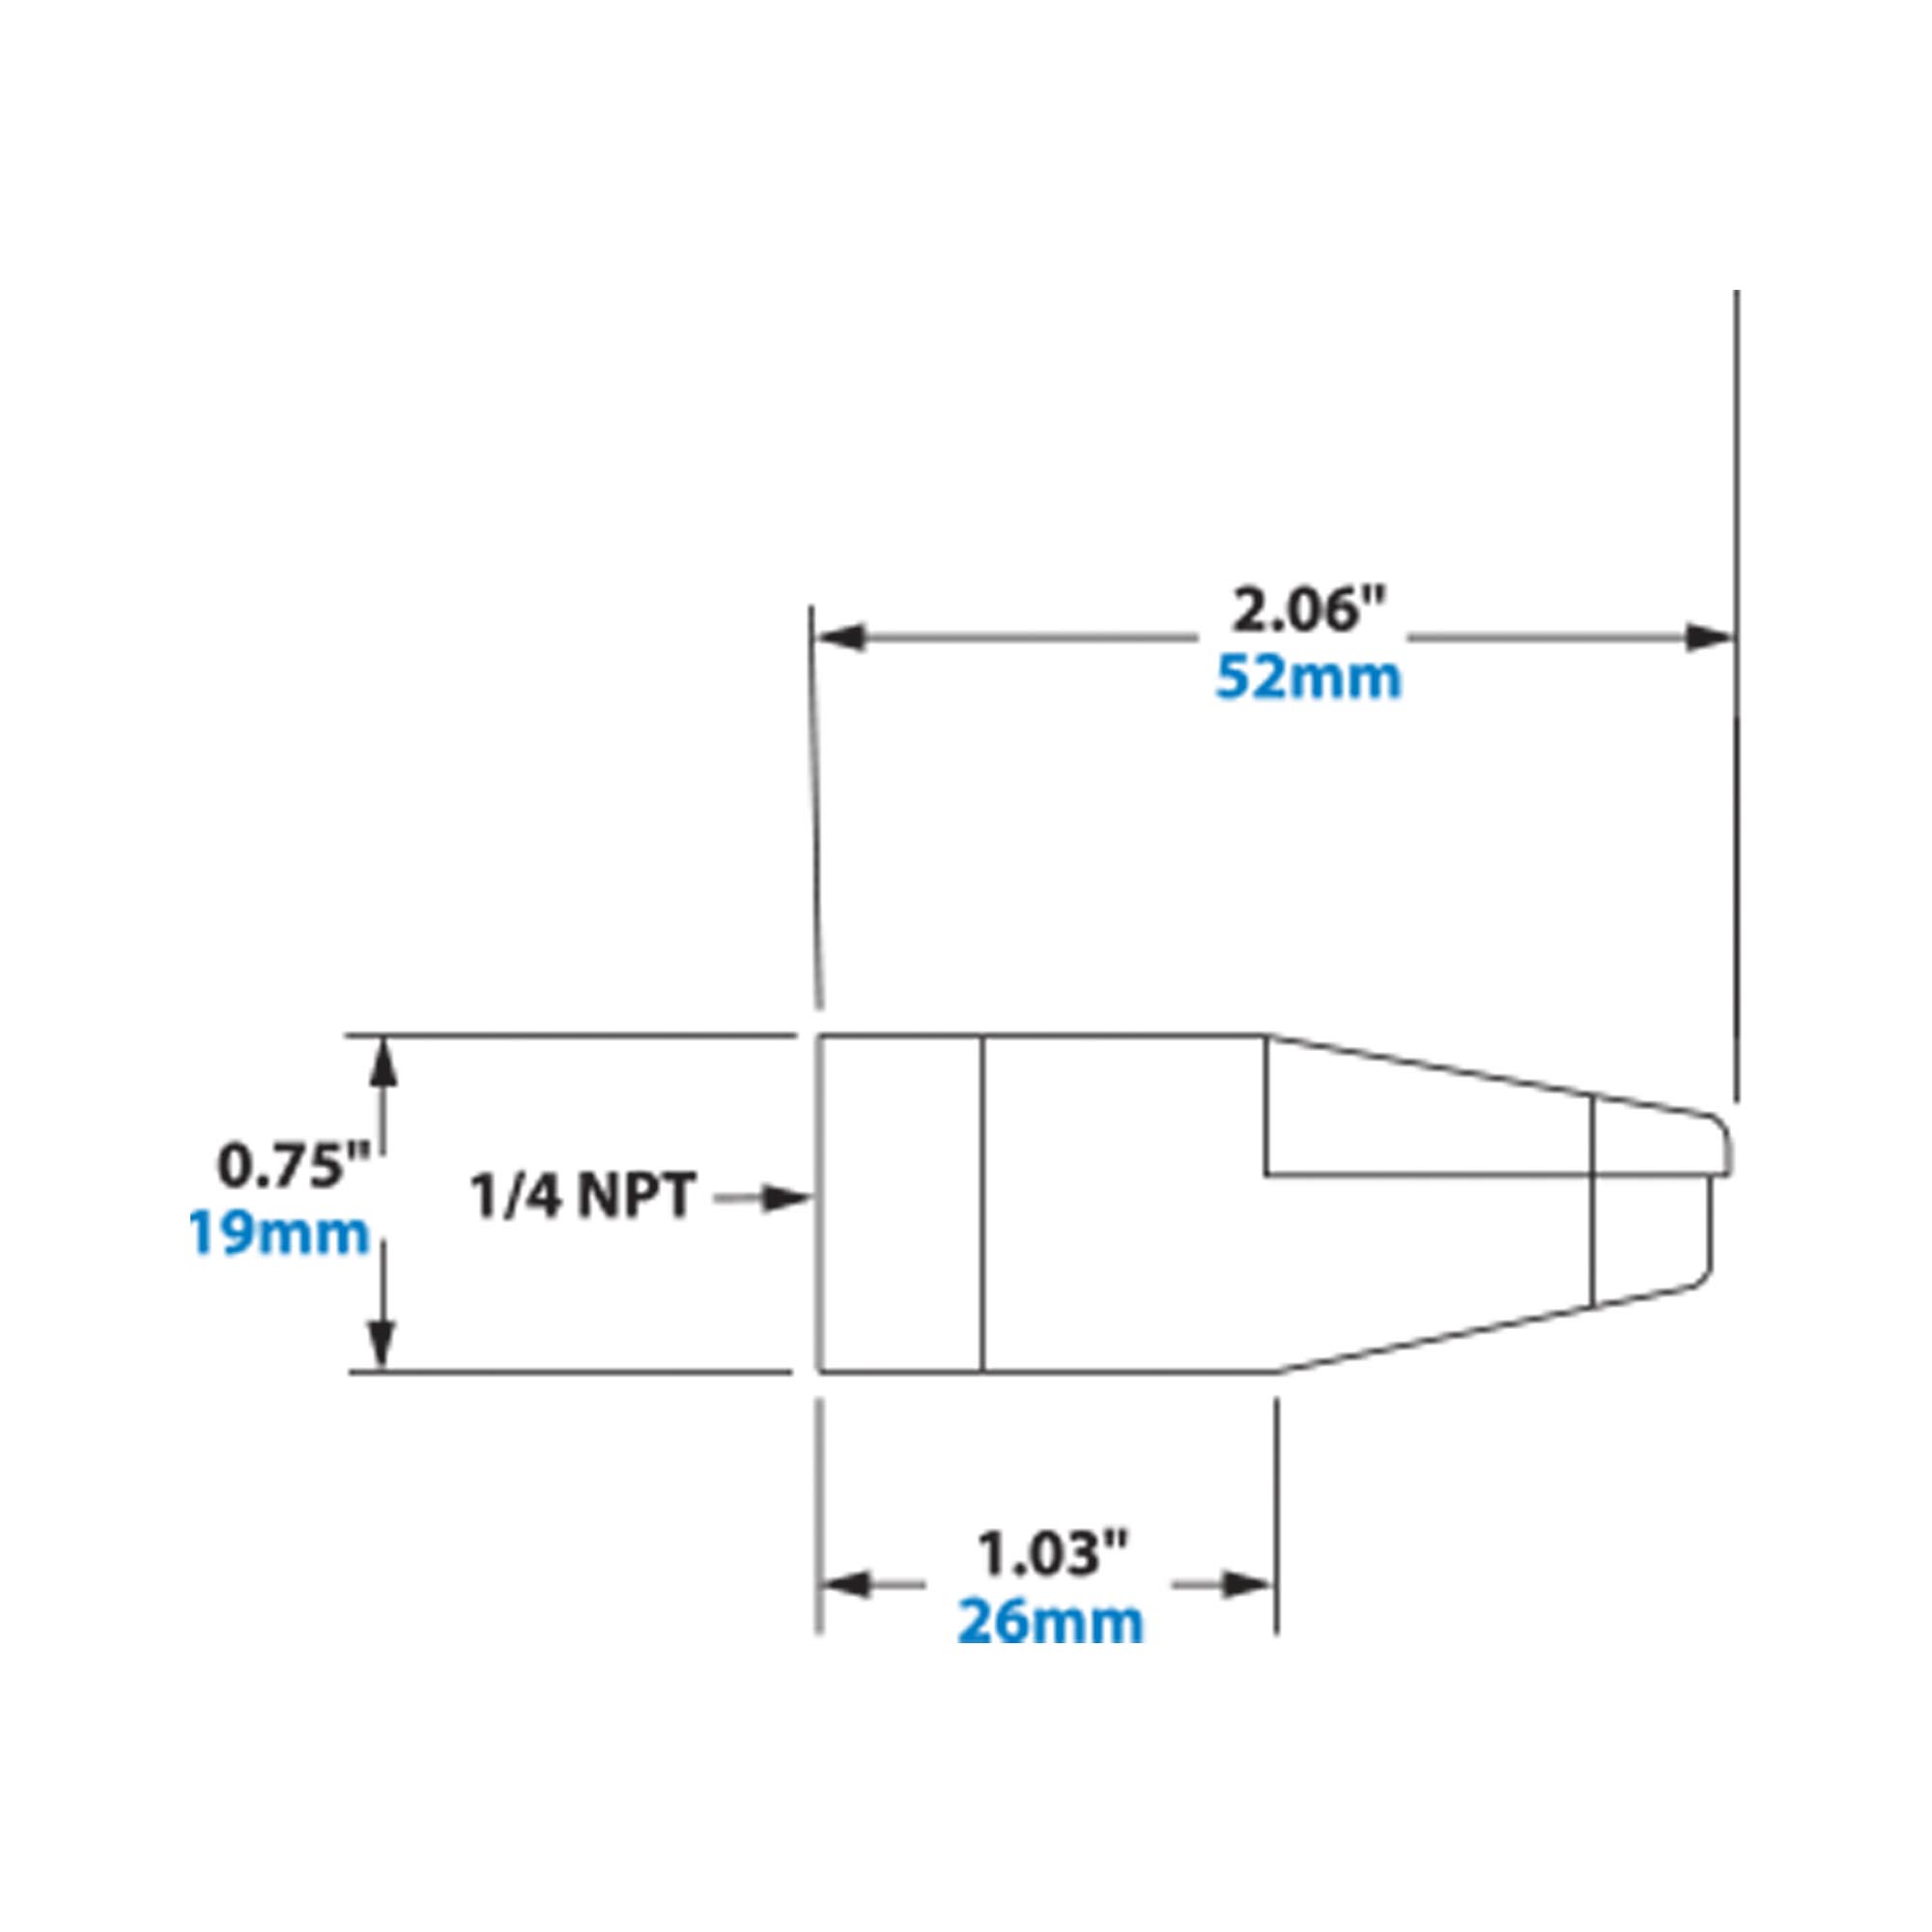 EXAIR 2 Inch High Power Flat Super Air Nozzle Dimensions